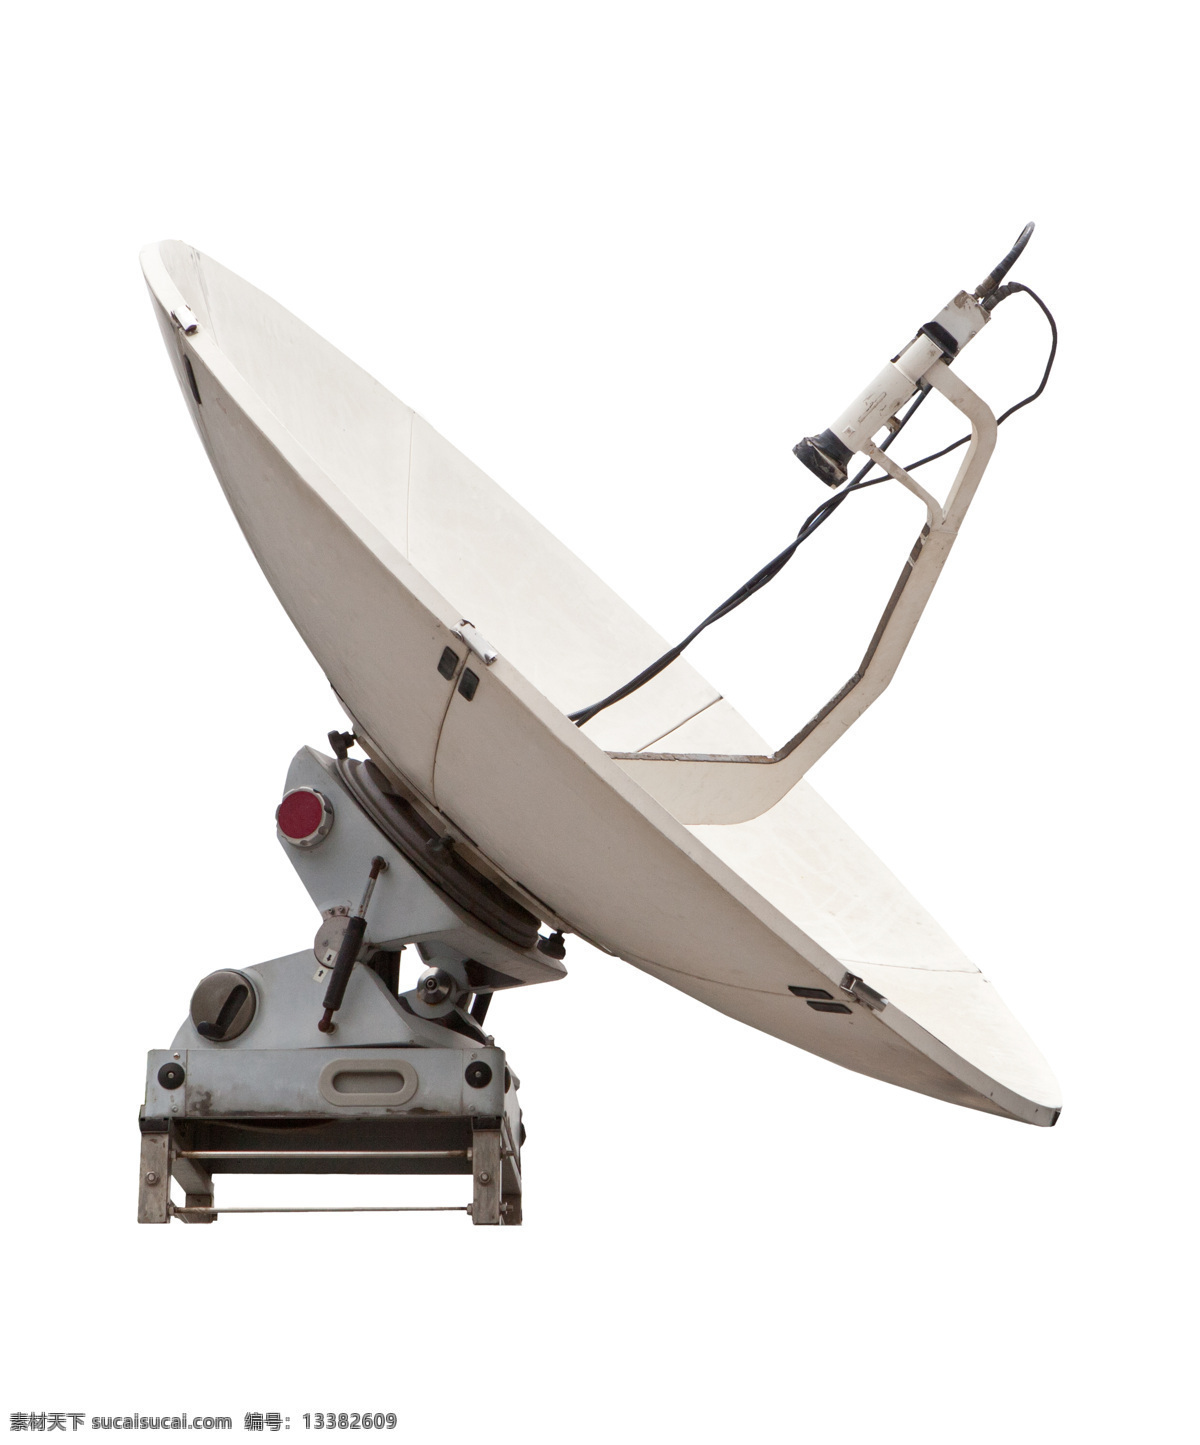 雷达 接收器 设备 高清 雷达接收器 科技 未来 卫星天线 卫星接收器 雷达素材 设备素材 宇宙 太空 现代科技 白色